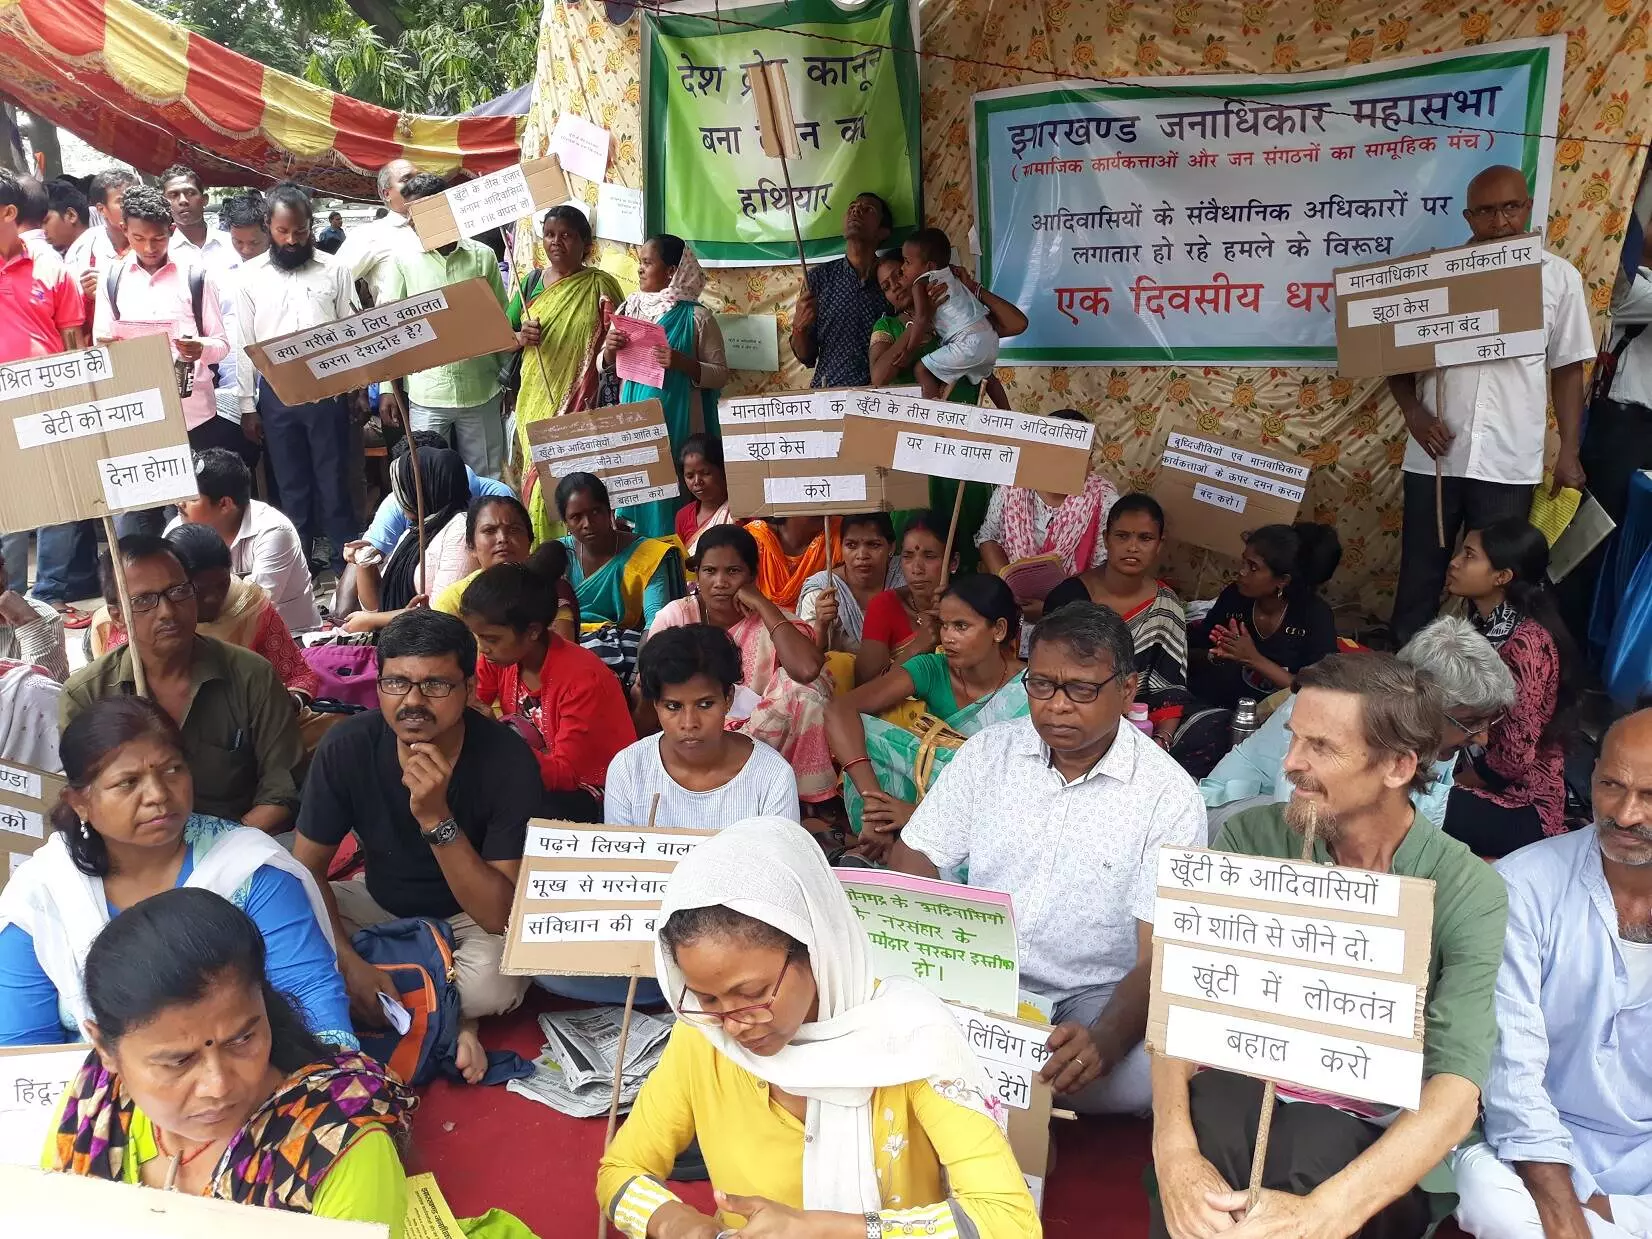 झारखंड: पत्थलगड़ी करने पर आदिवासियों पर देशद्रोह के मुकदमें, सामाजिक कार्यकर्ताओं ने जताया विरोध